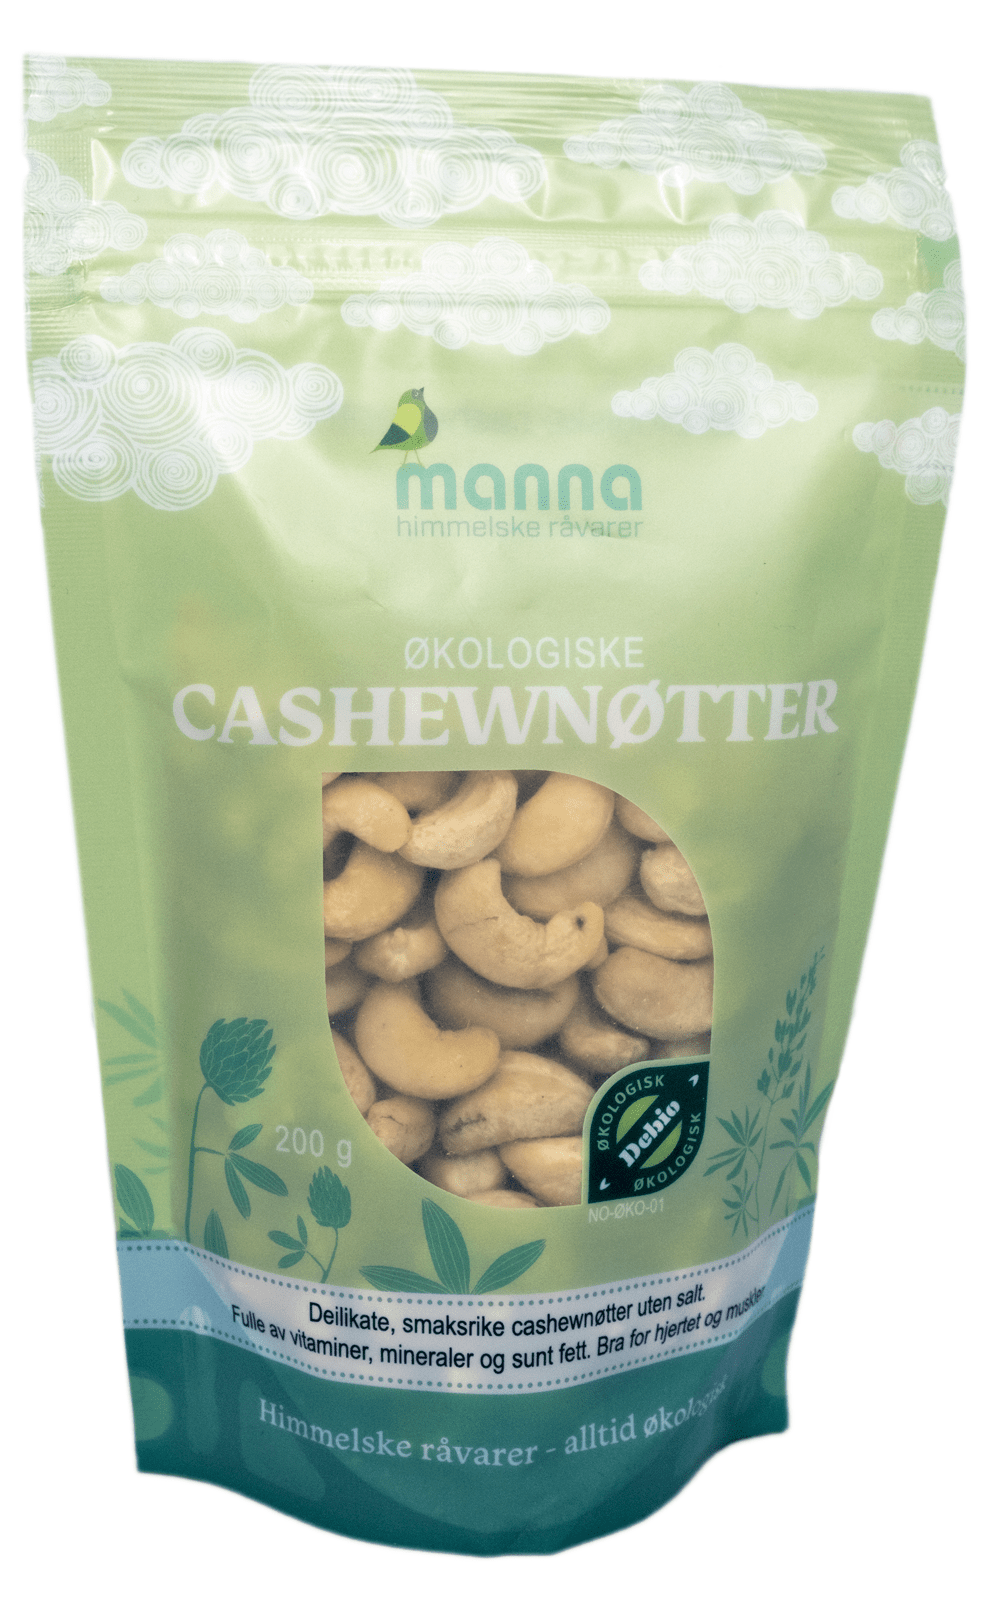 Cashewnøtter (økologisk), 200 g